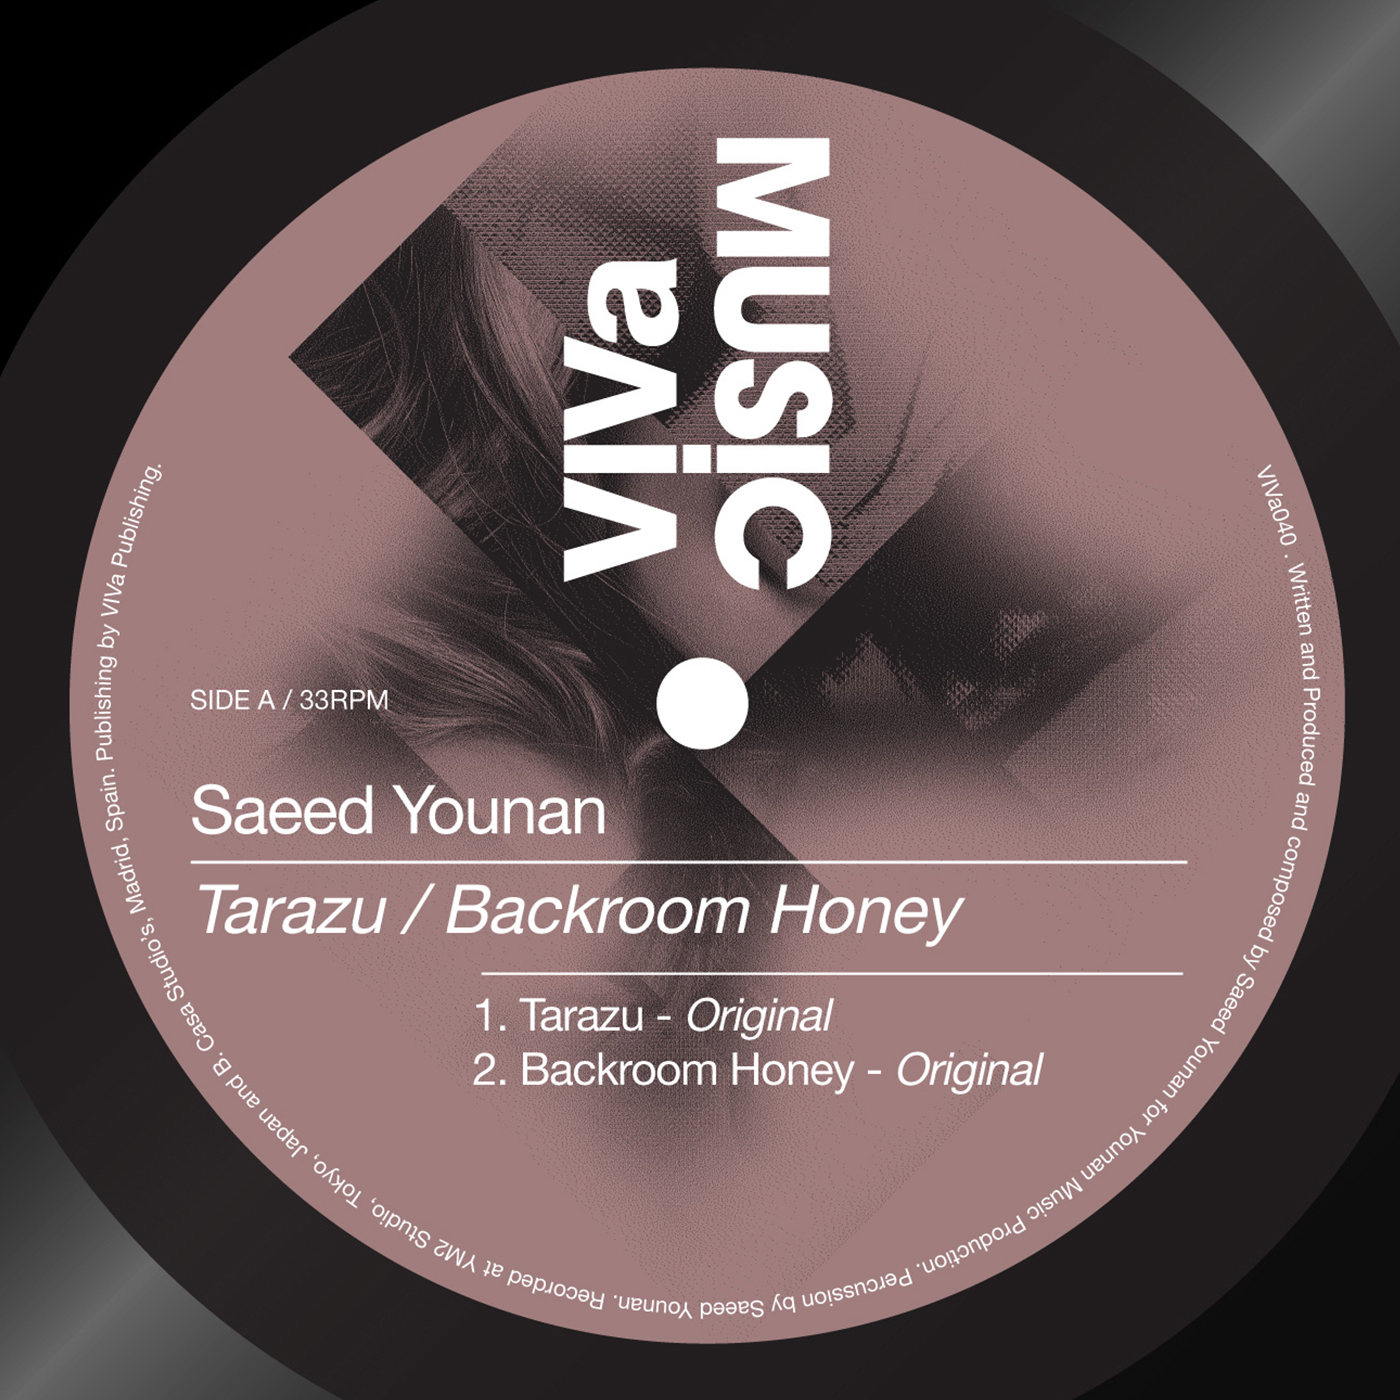 Tarazu / Backroom Honey